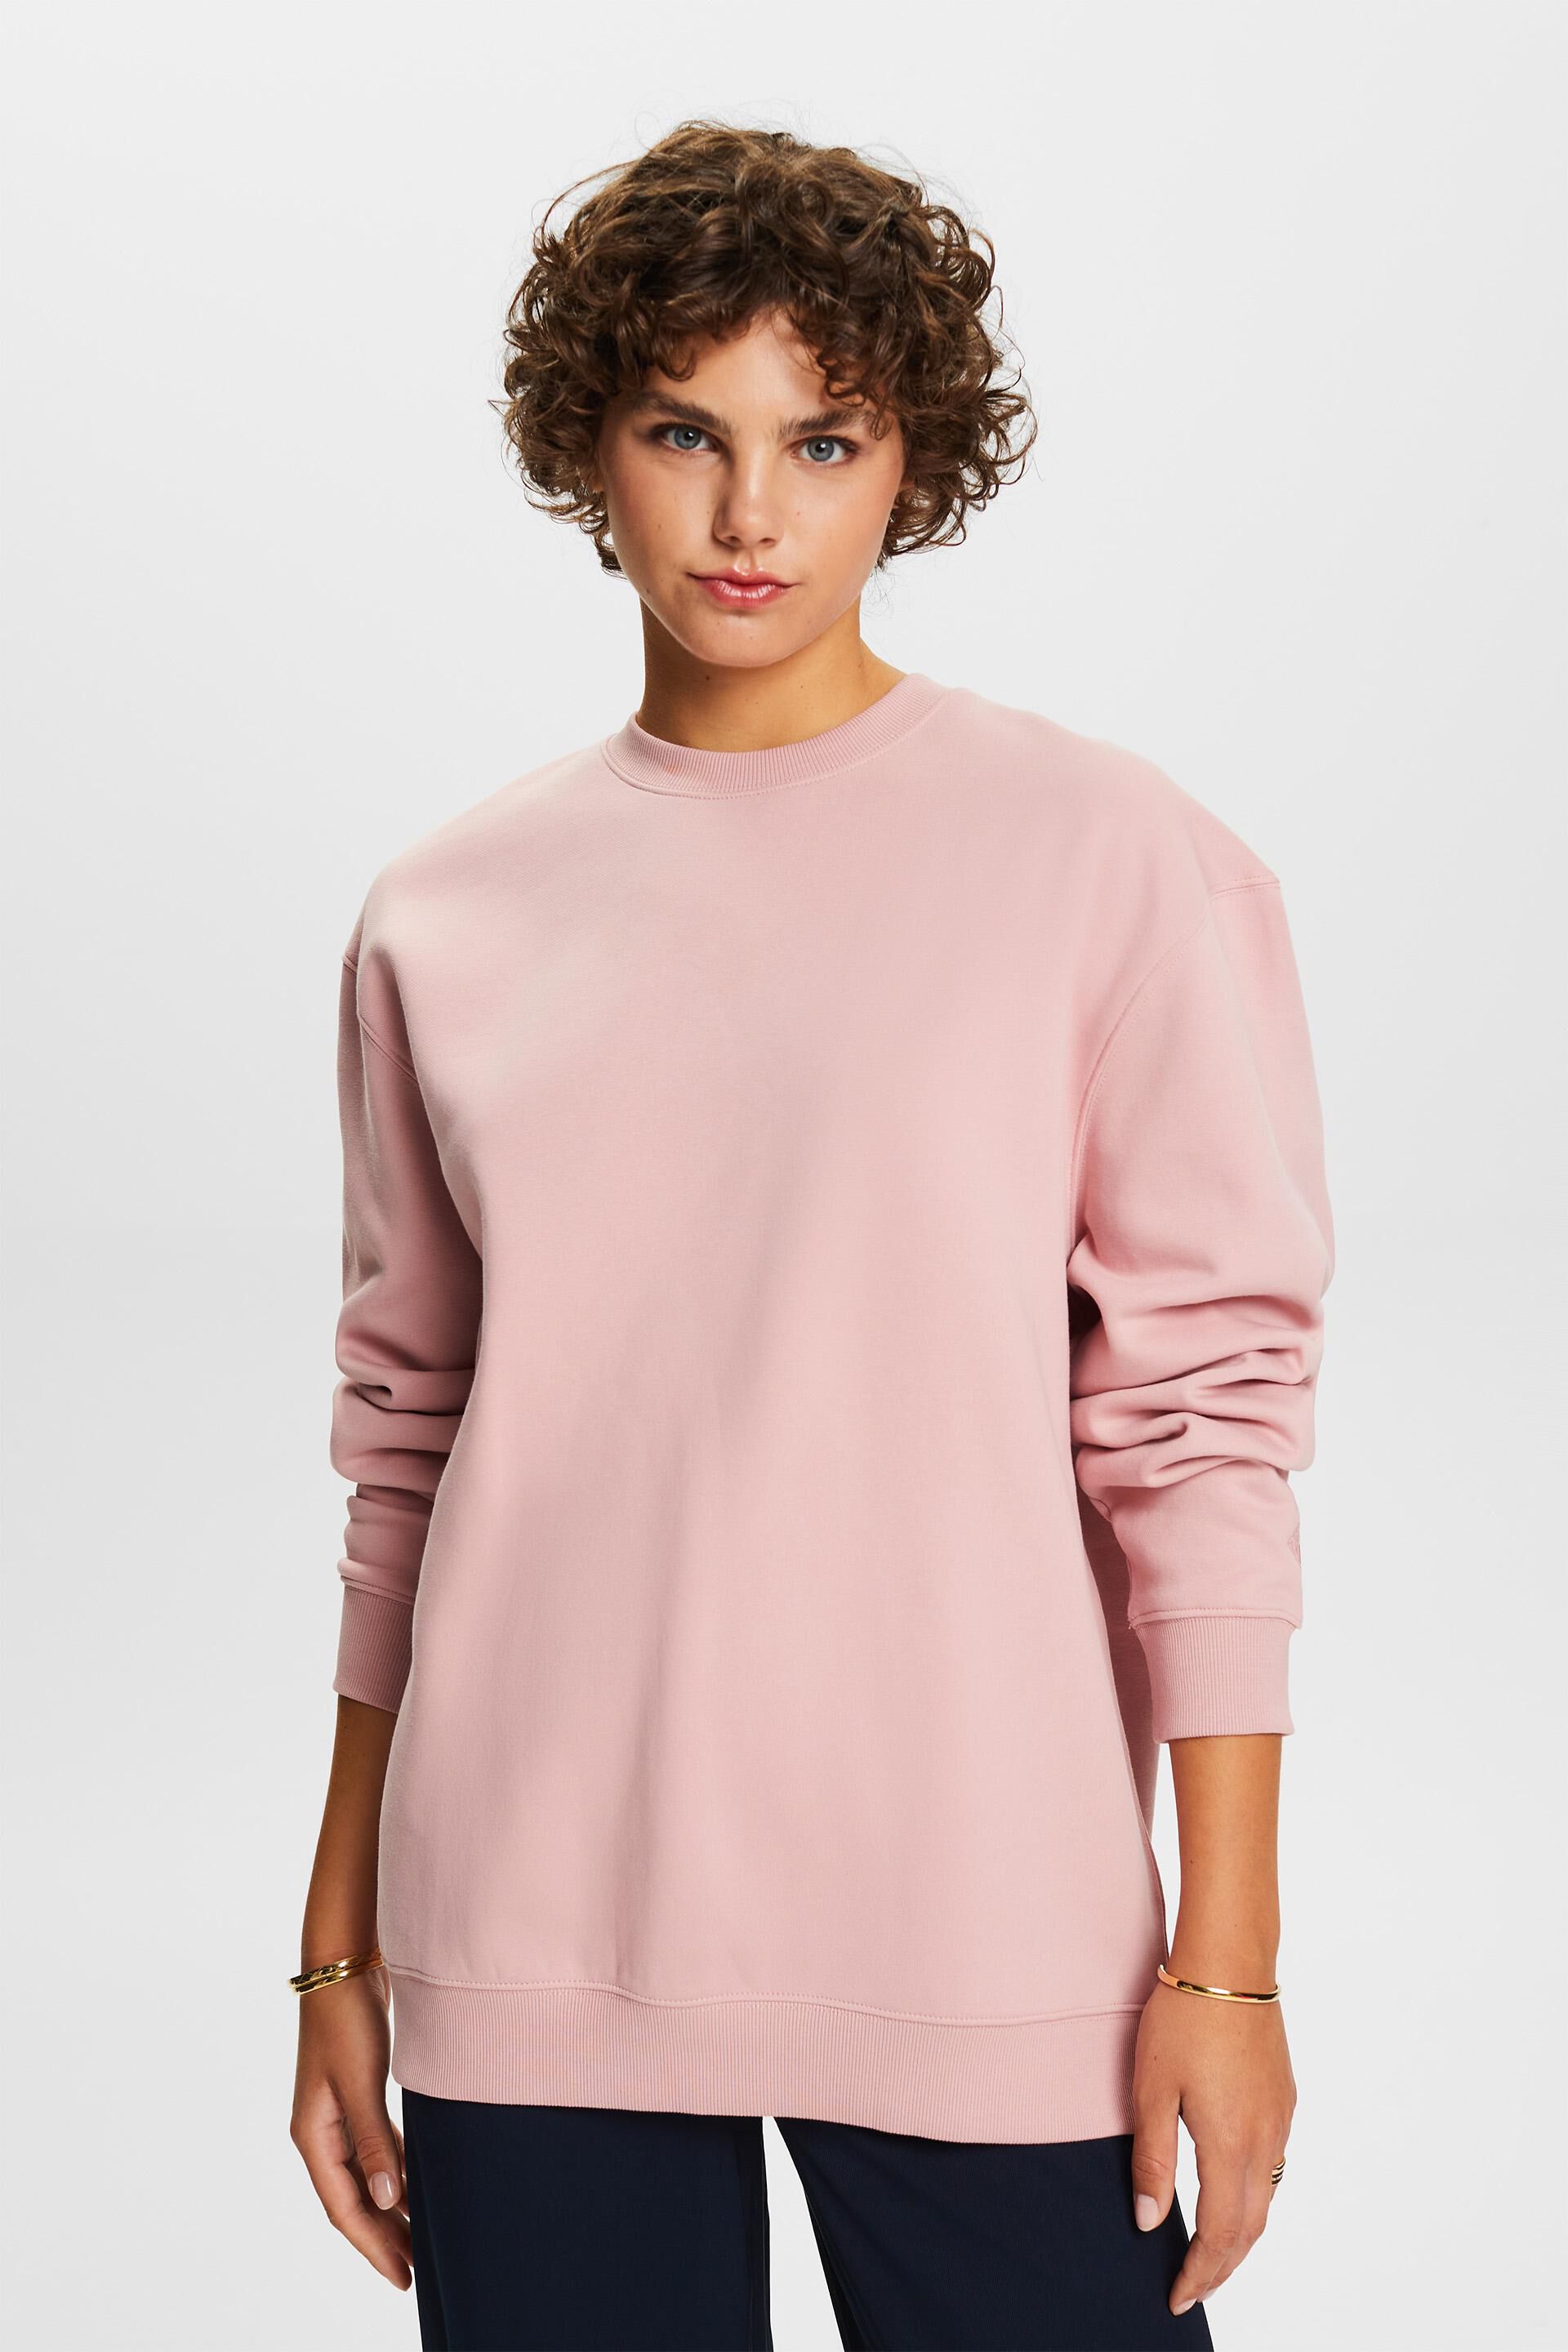 Esprit Pullover Sweatshirt Cotton Blend